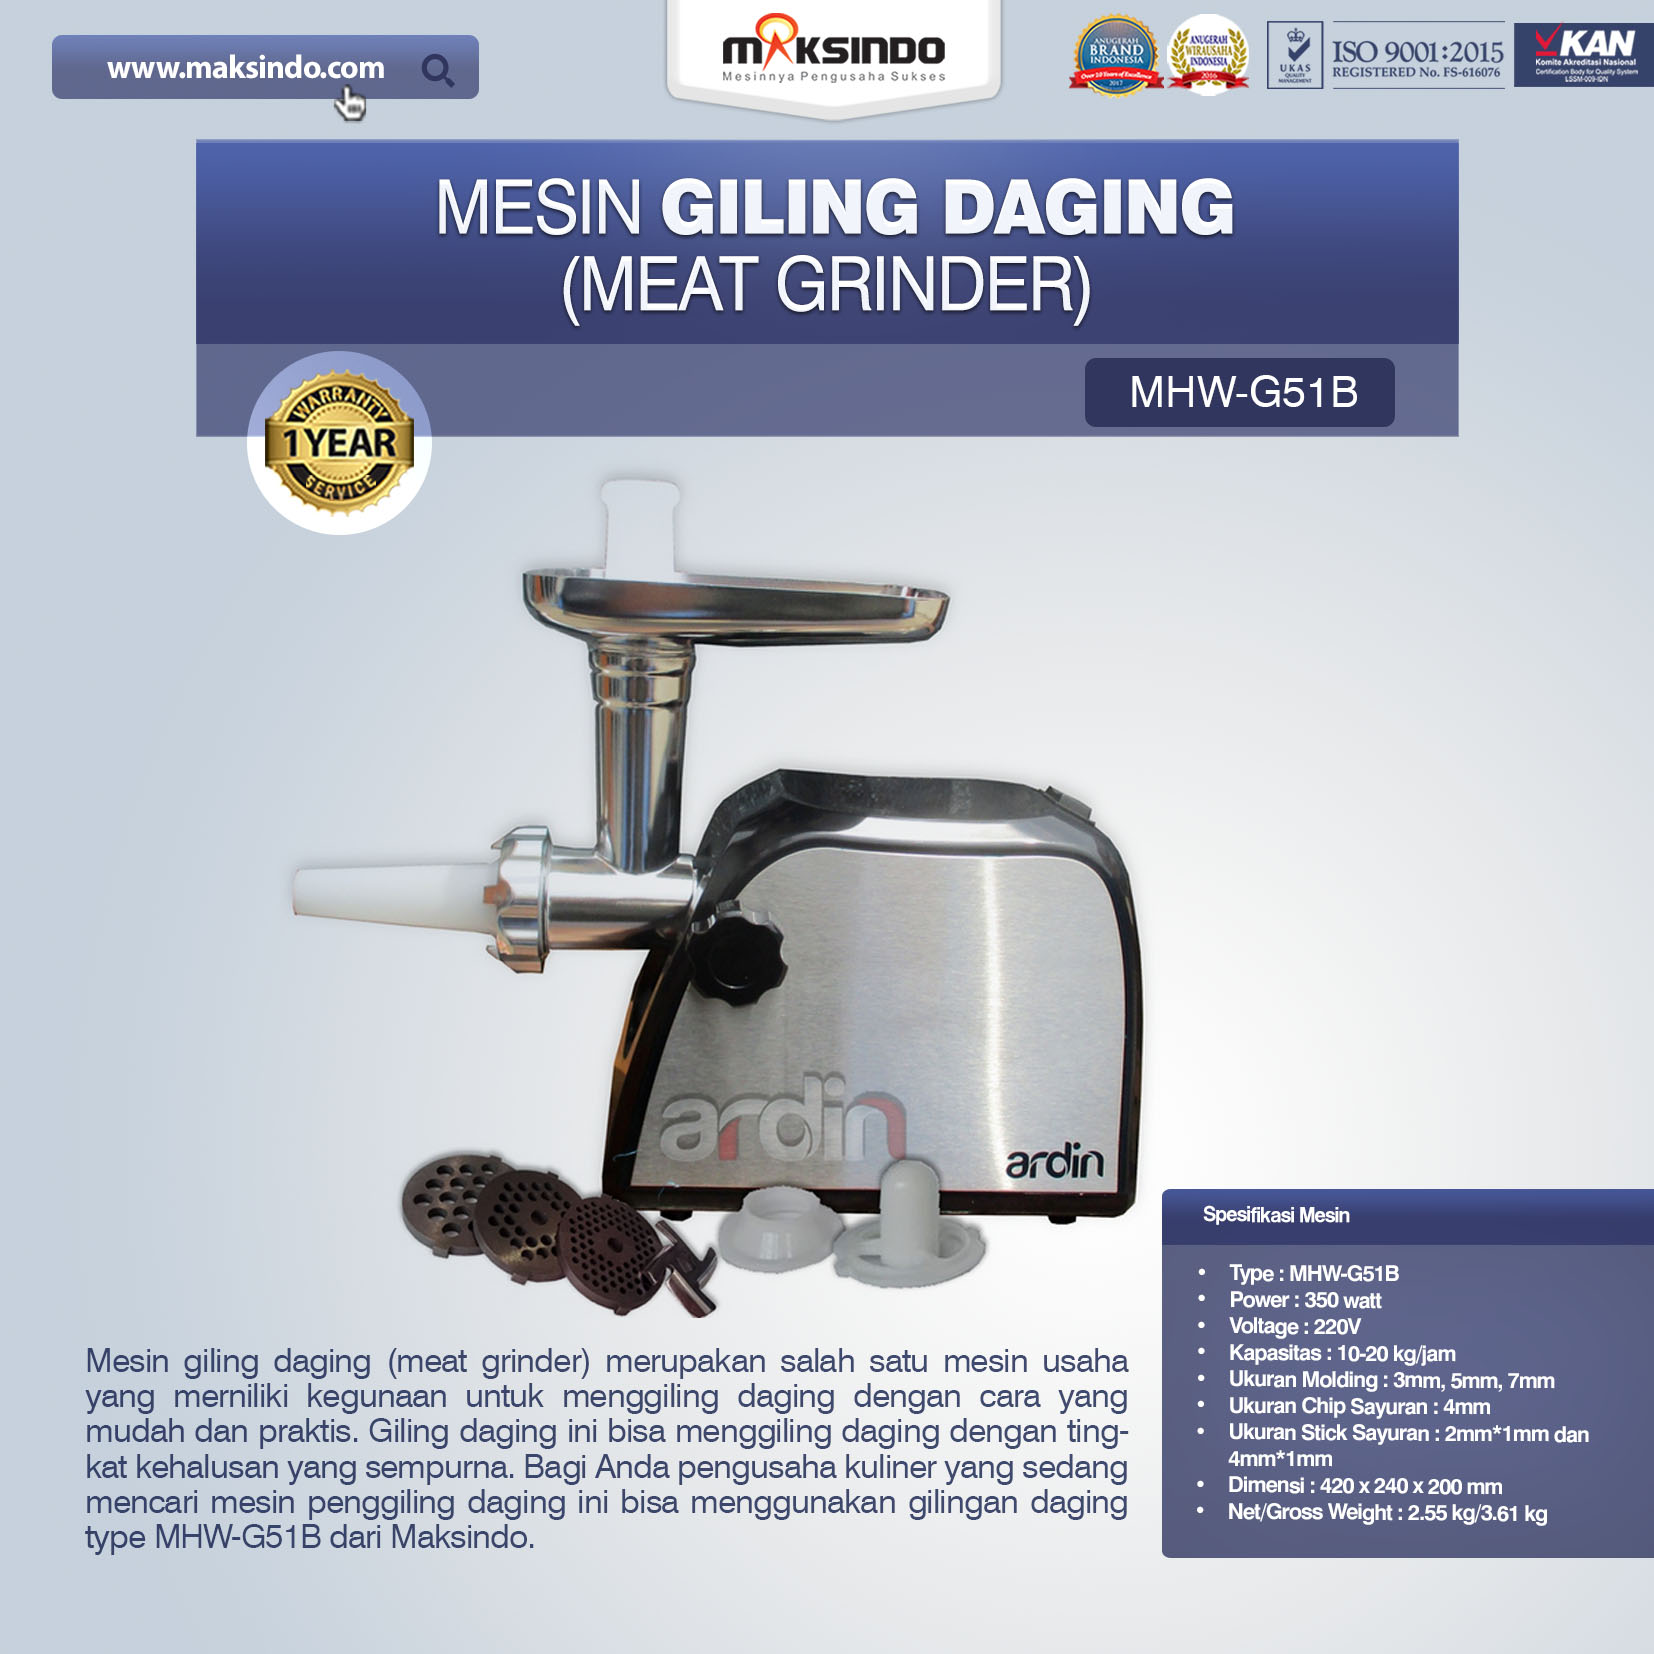 Jual Mesin Giling Daging (Meat Grinder) MHW-G51B di Bekasi